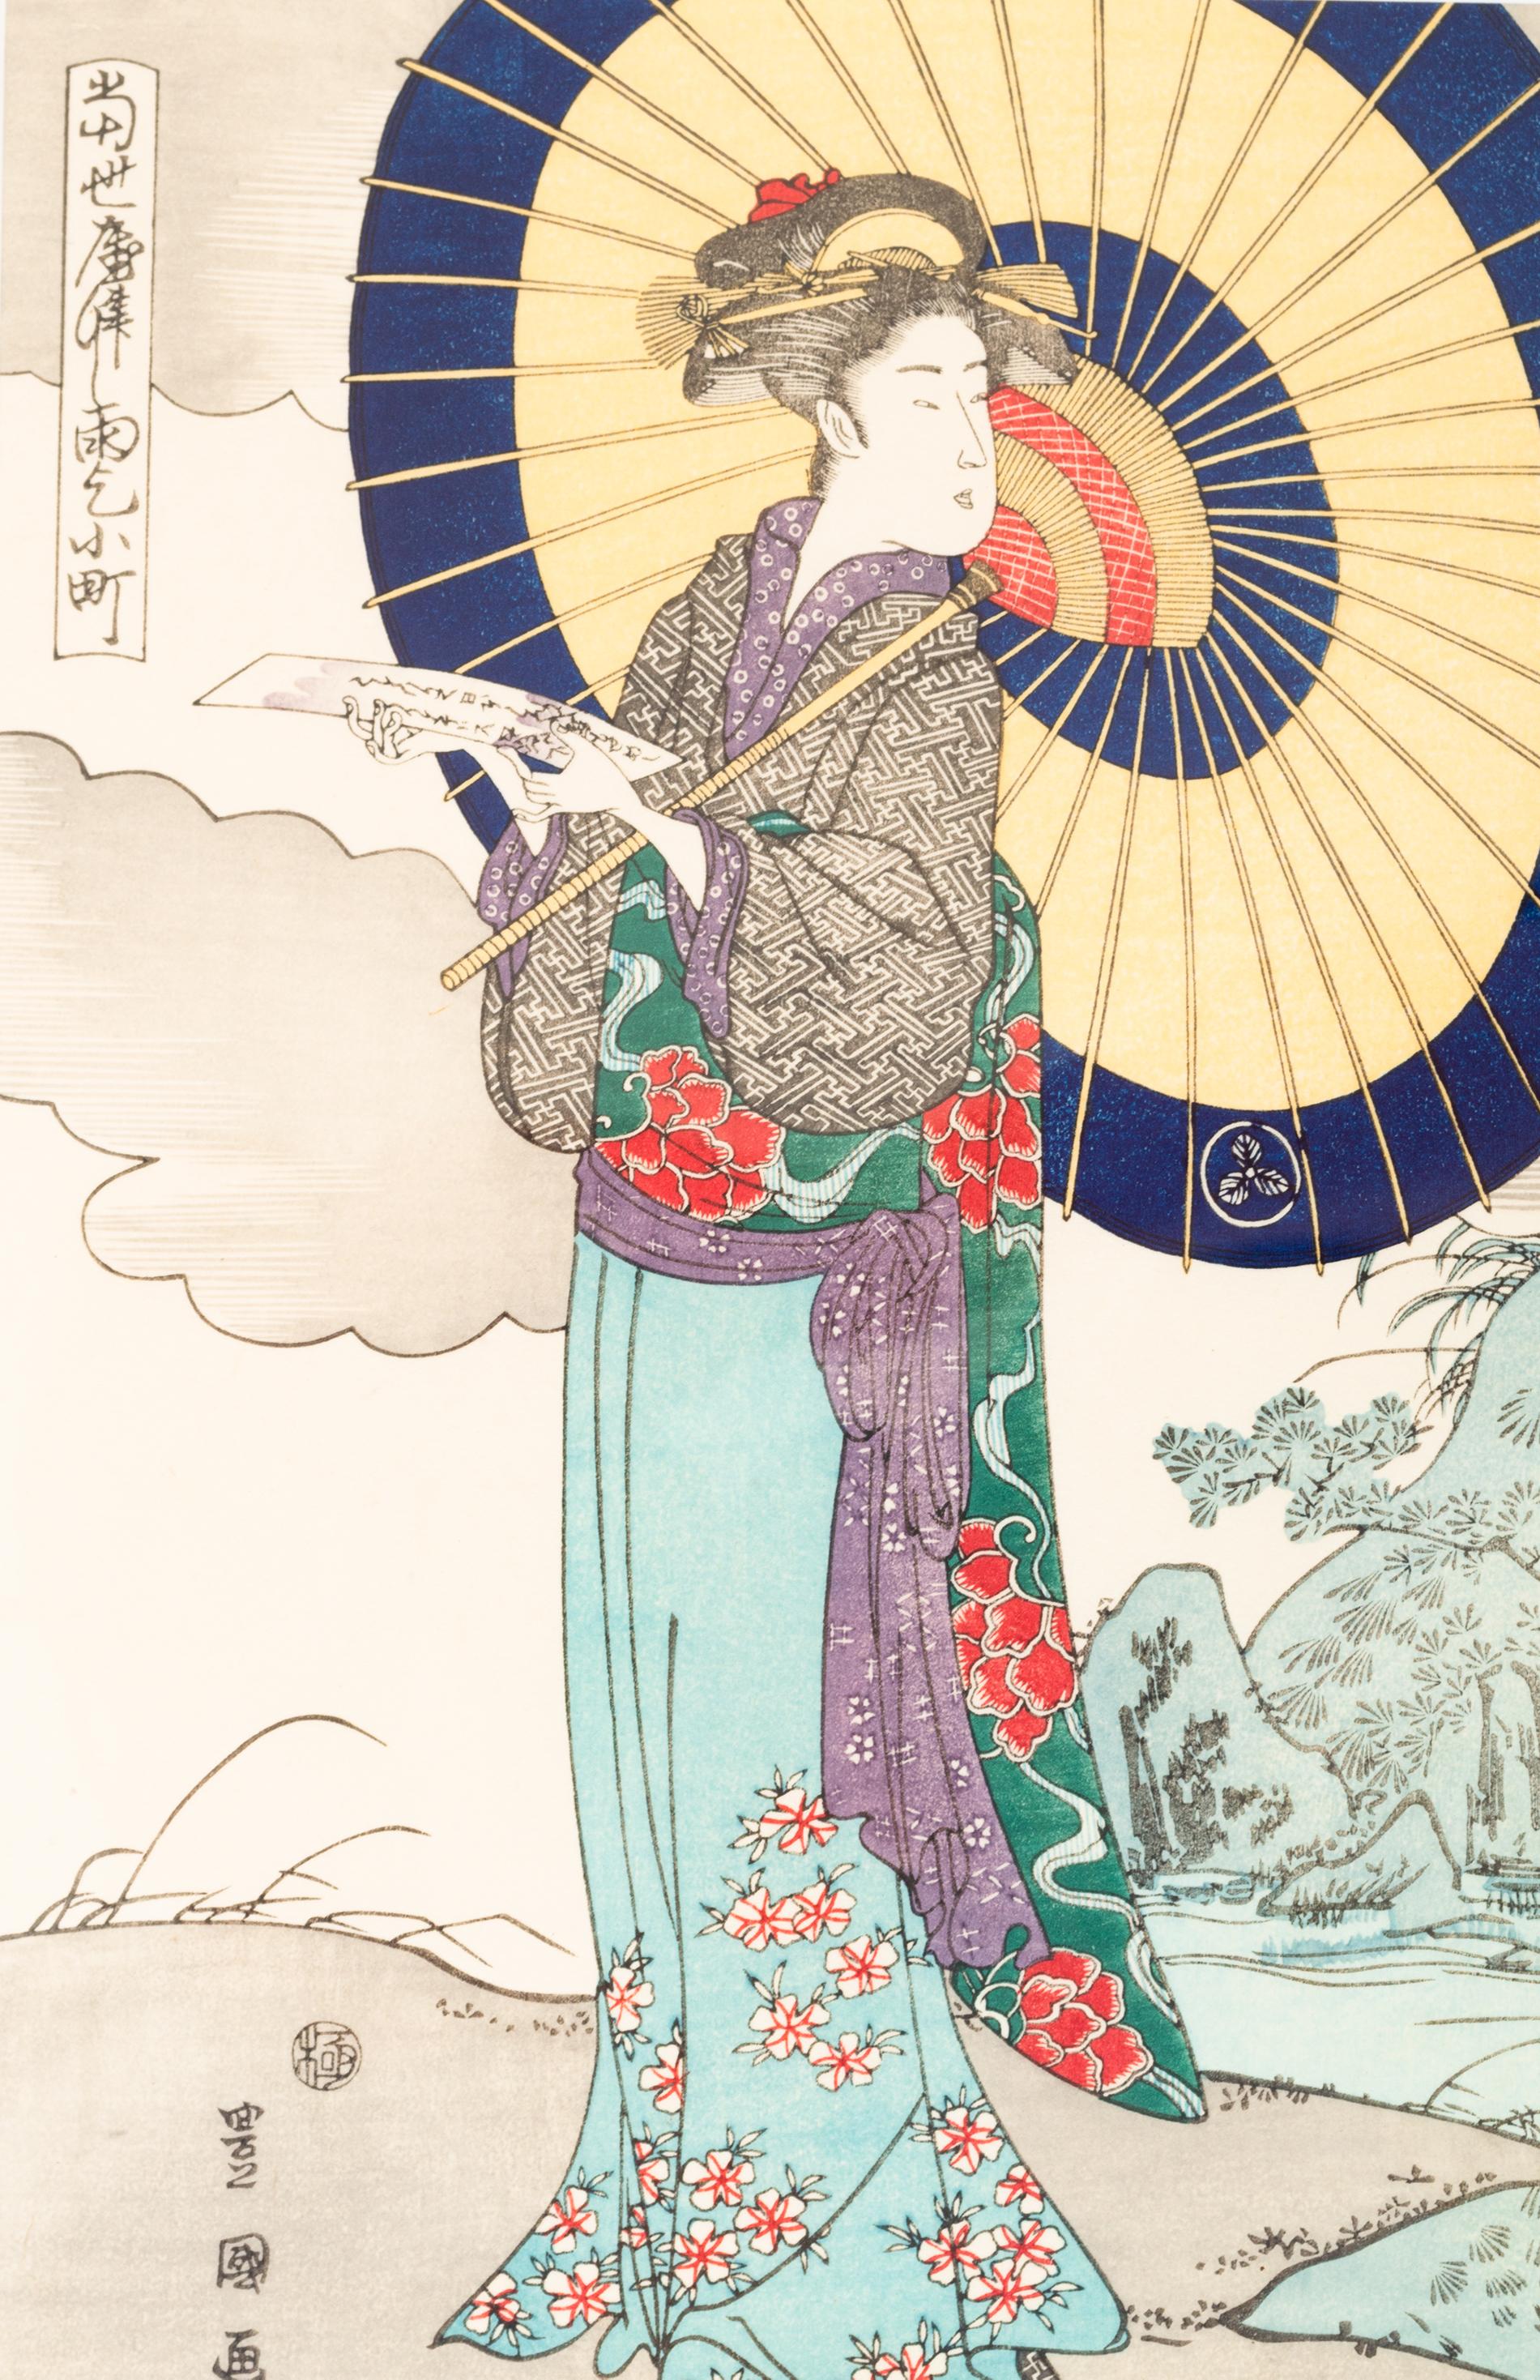 Une gravure sur bois encadrée représentant une dame japonaise, réalisée à l'origine par Utagawa Kunisada (Toyokuni III).
l'un des plus célèbres artistes japonais de l'Ukiyo-e, Utagawa Kunisada, également connu sous le nom d'Utagawa Toyokuni III